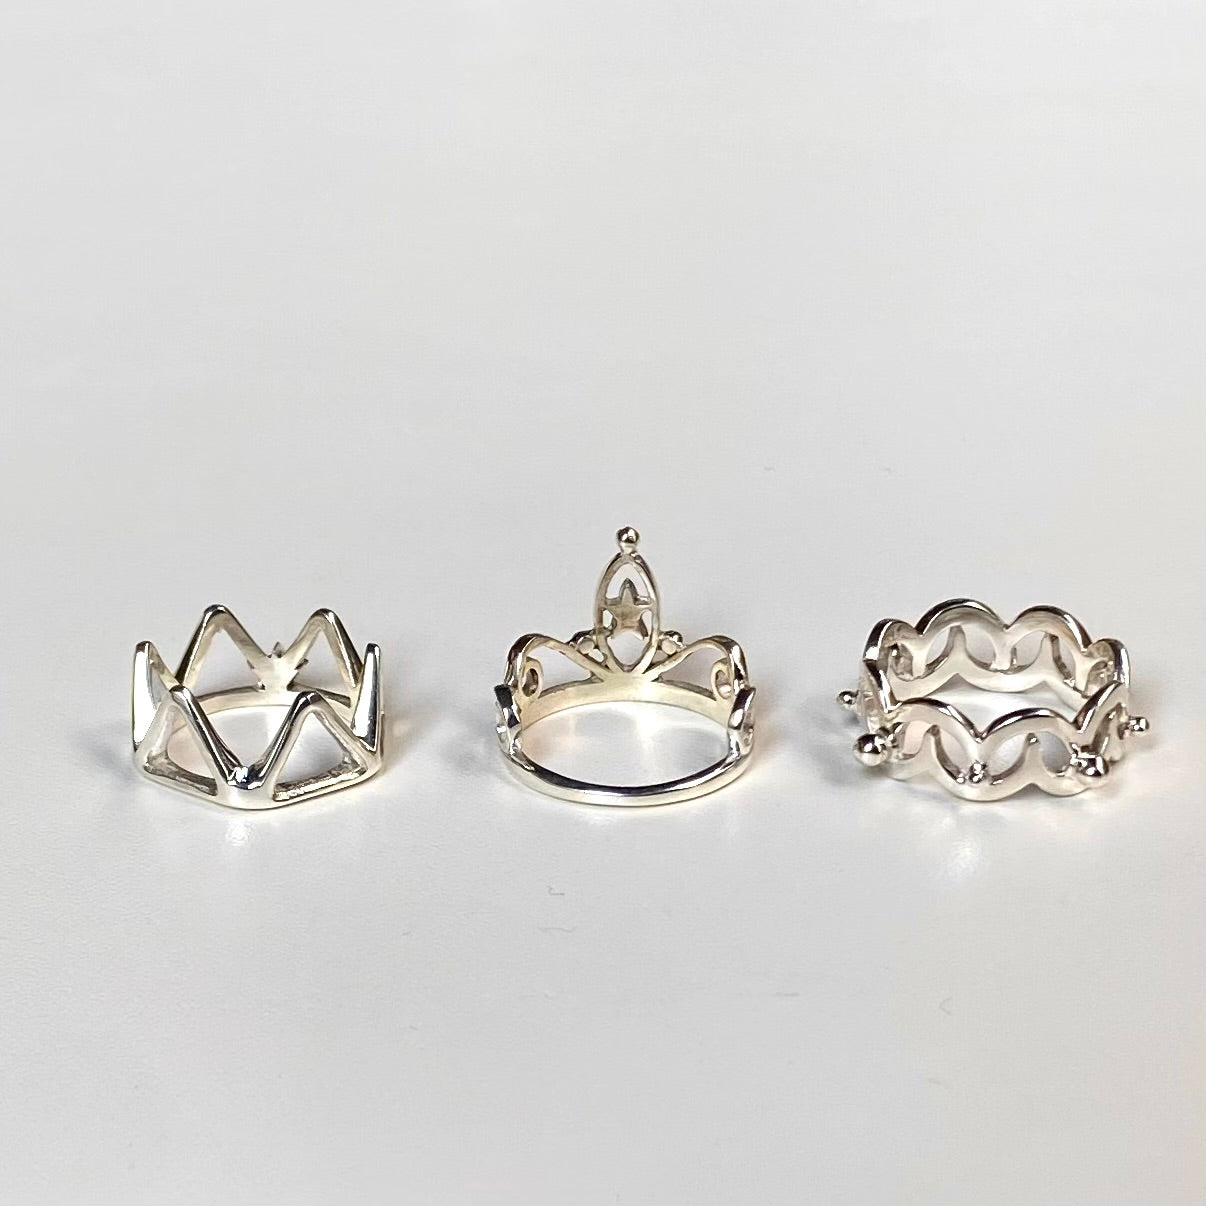 Crown plain ring 2